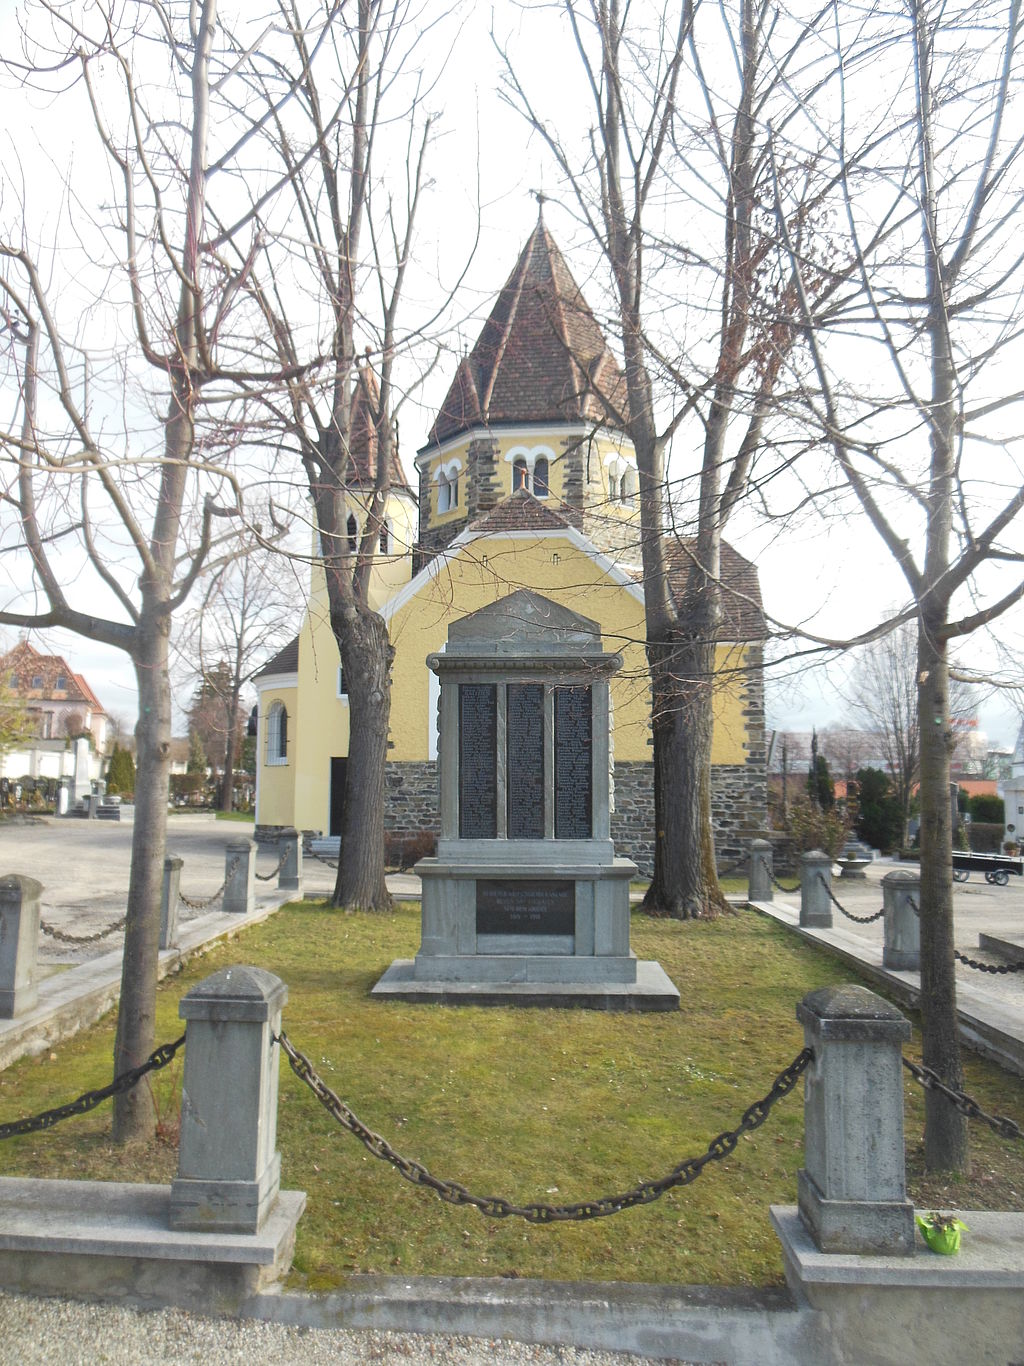 Ehrengr&auml;ber am Friedhof Krems, Nieder&ouml;sterreich, &Ouml;sterreich